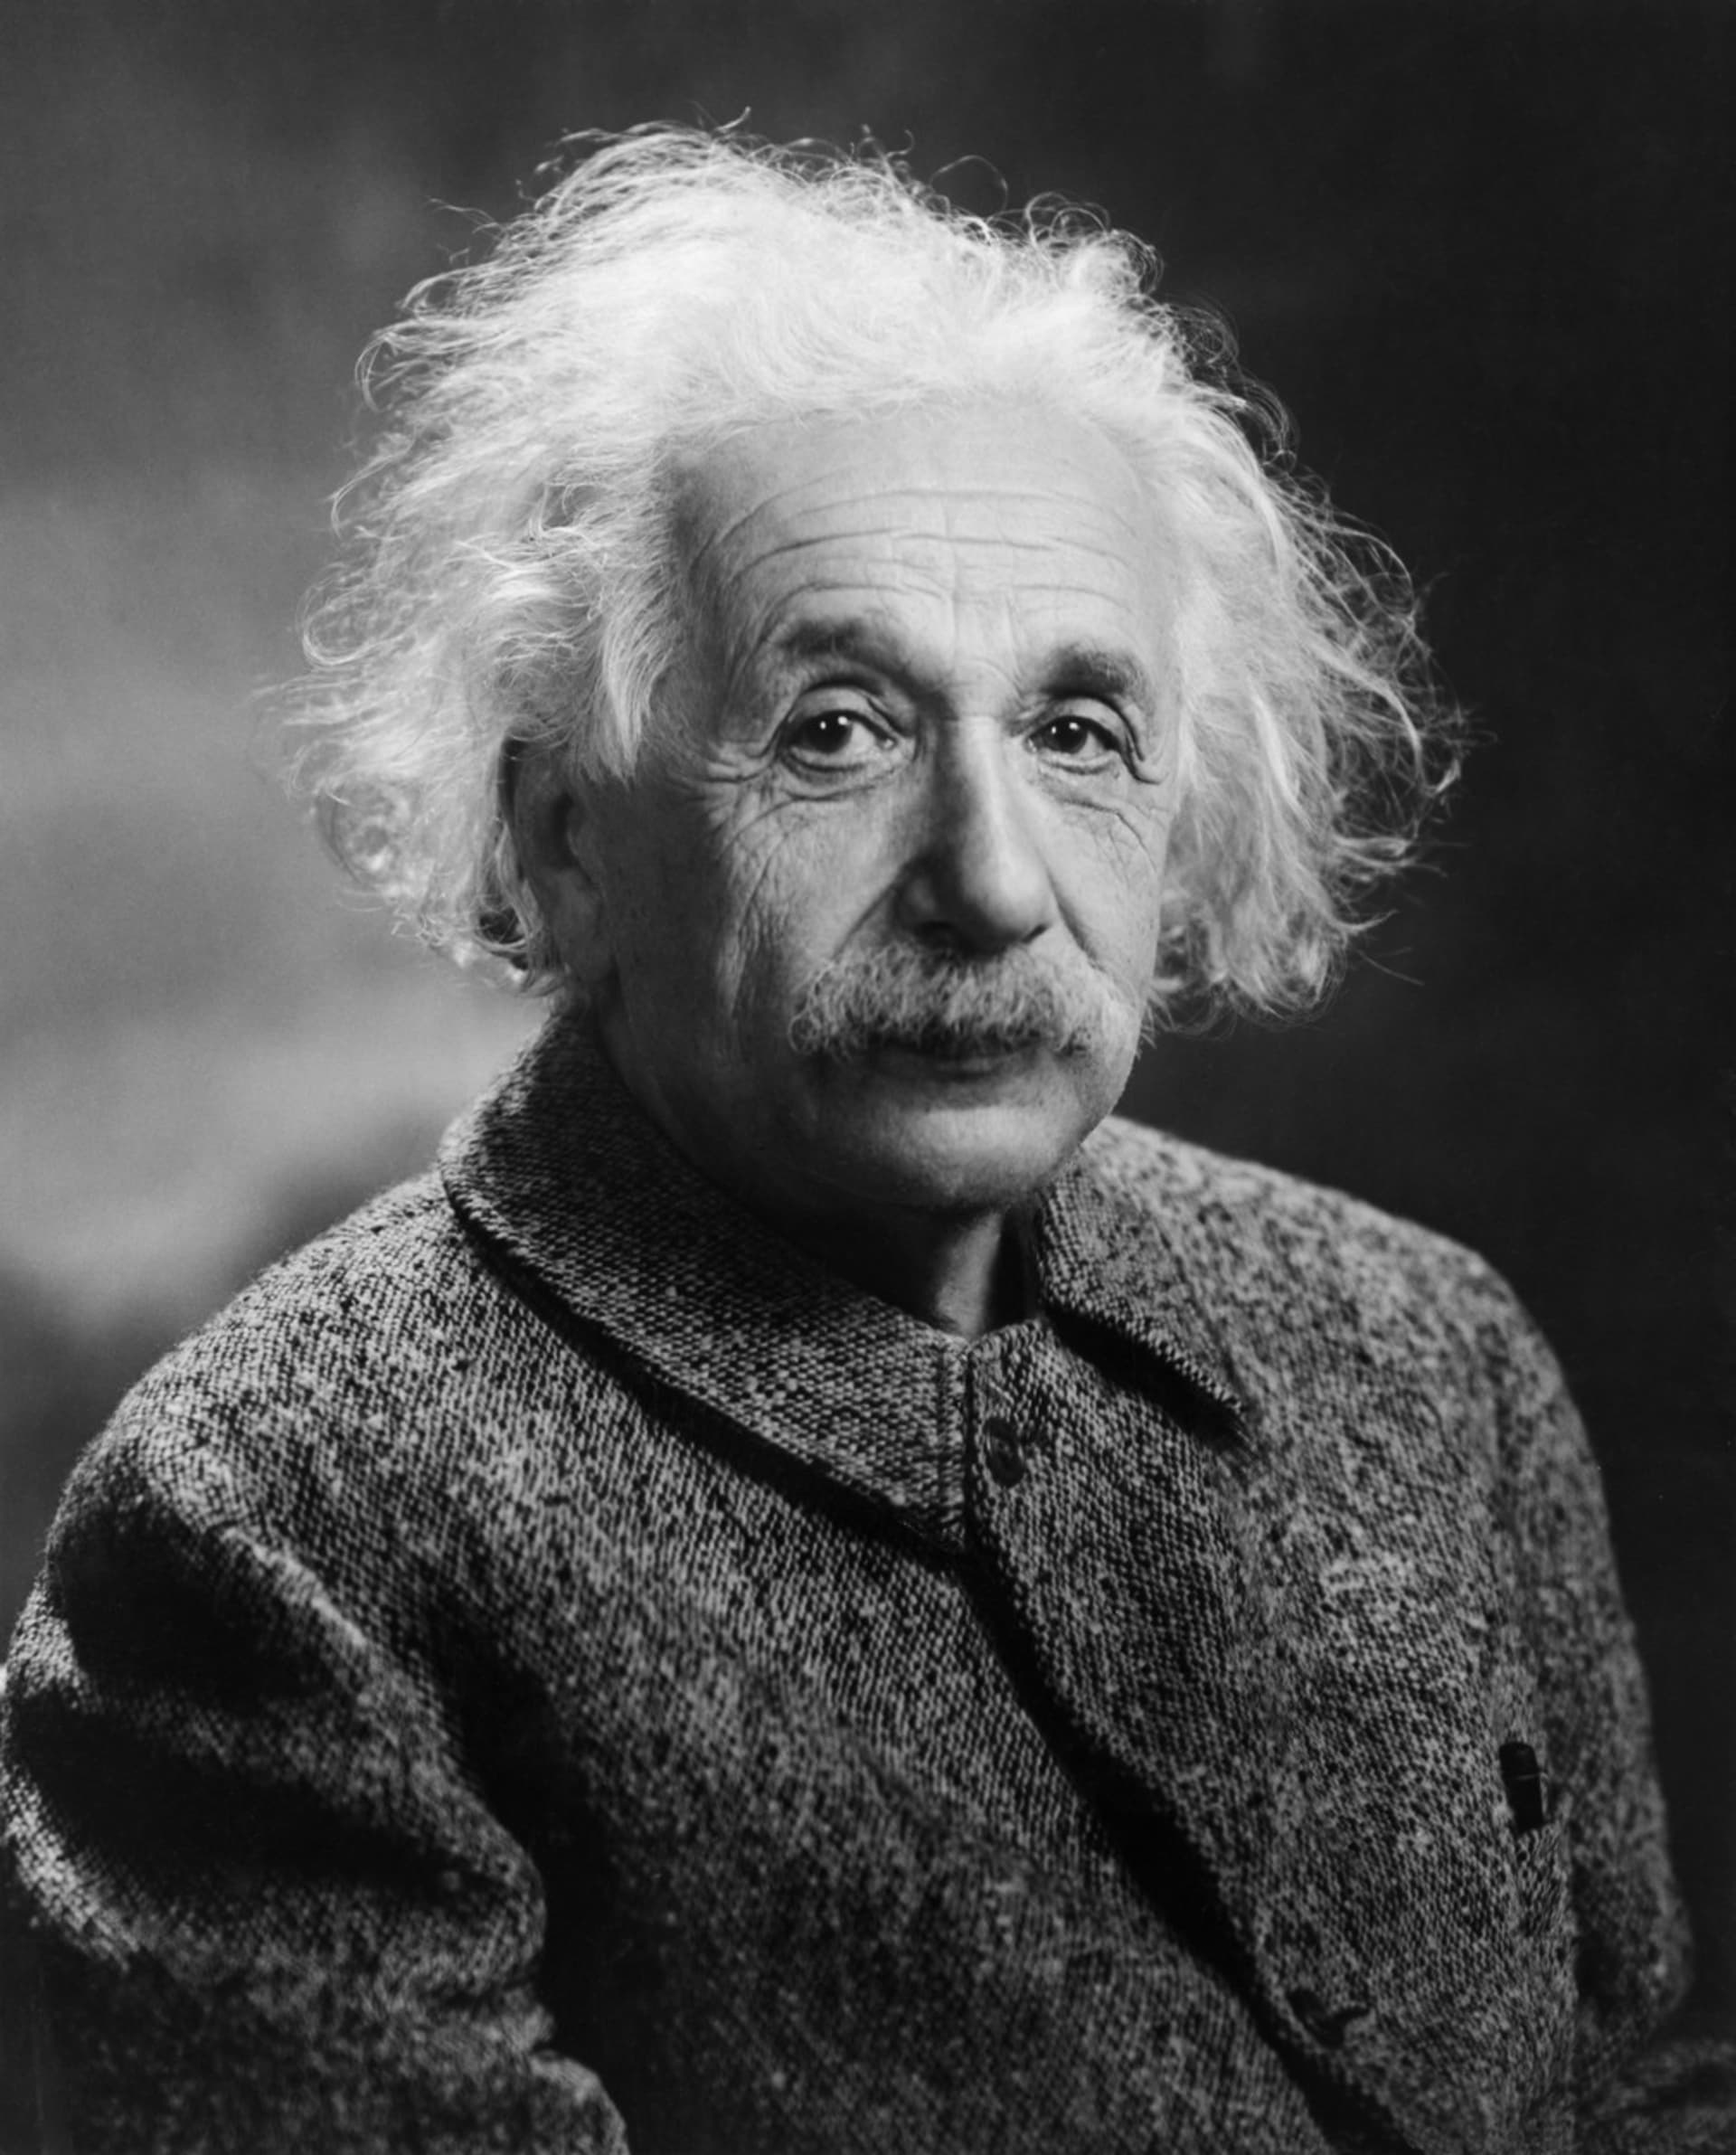 Portrét Alberta Einsteina